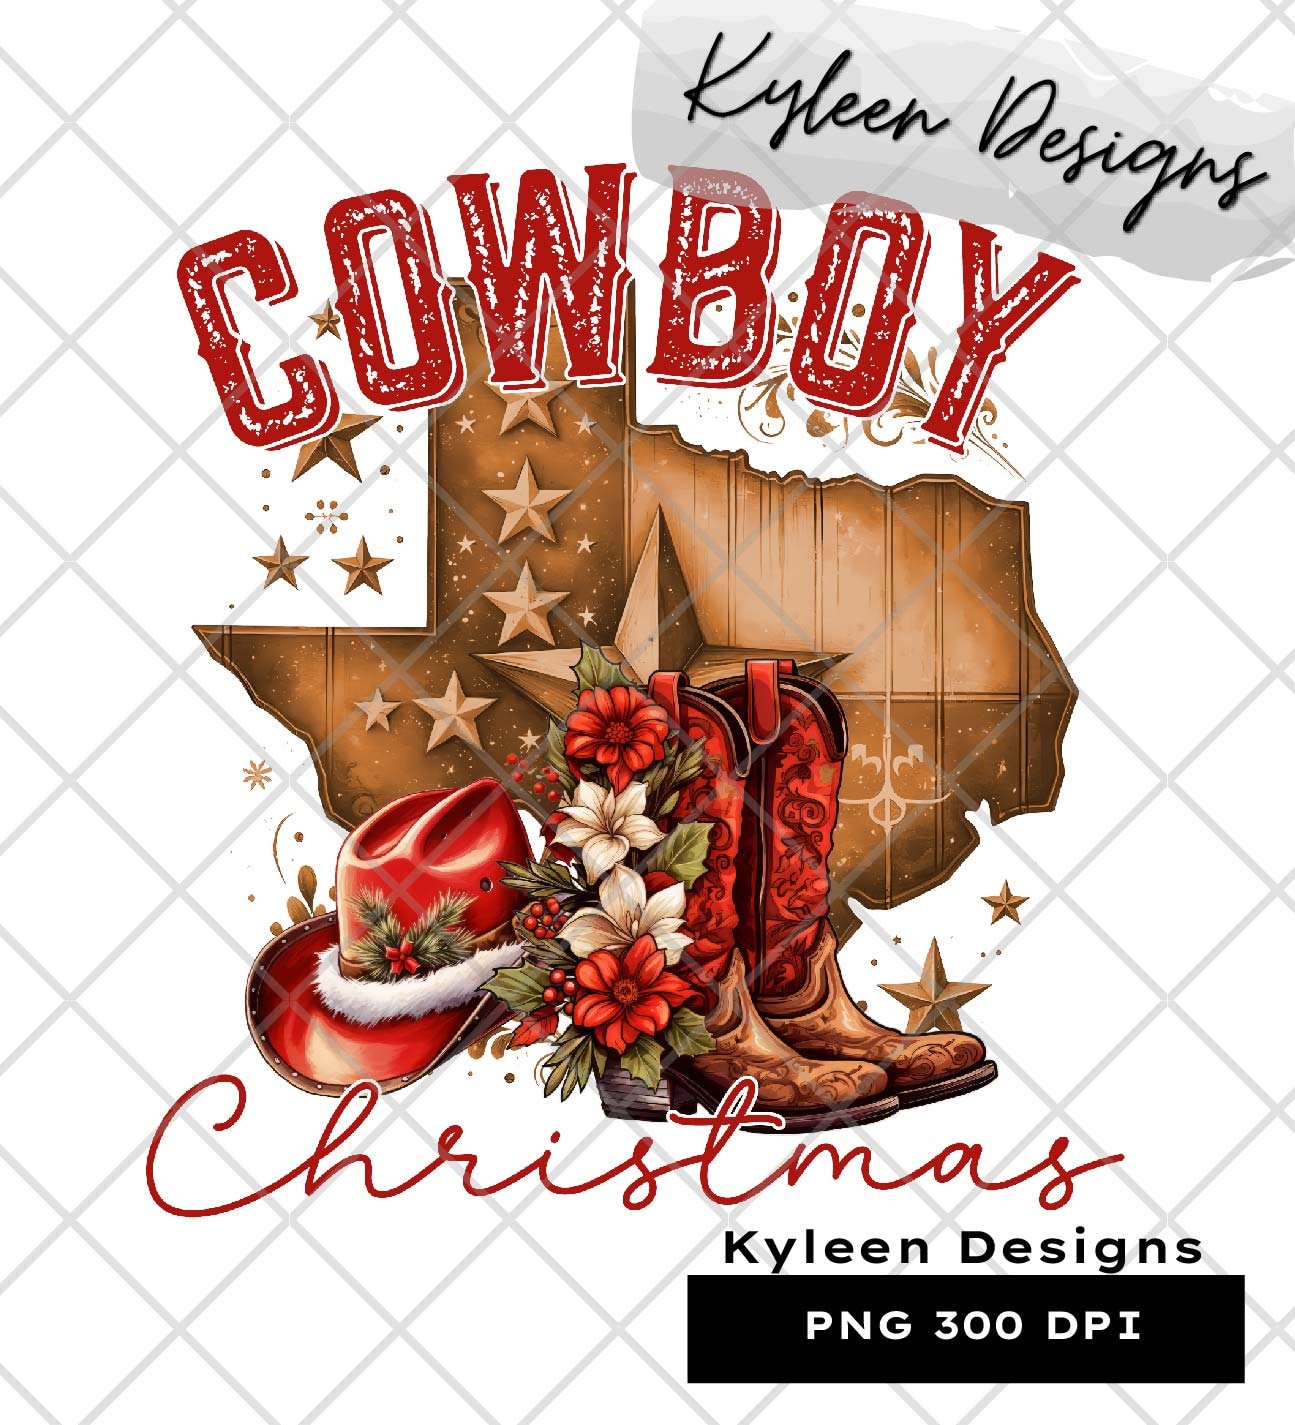 Cowboy Christmas High res 300 dpi PNG digital file for sublimation, DTF, DTG, printable vinyl etc